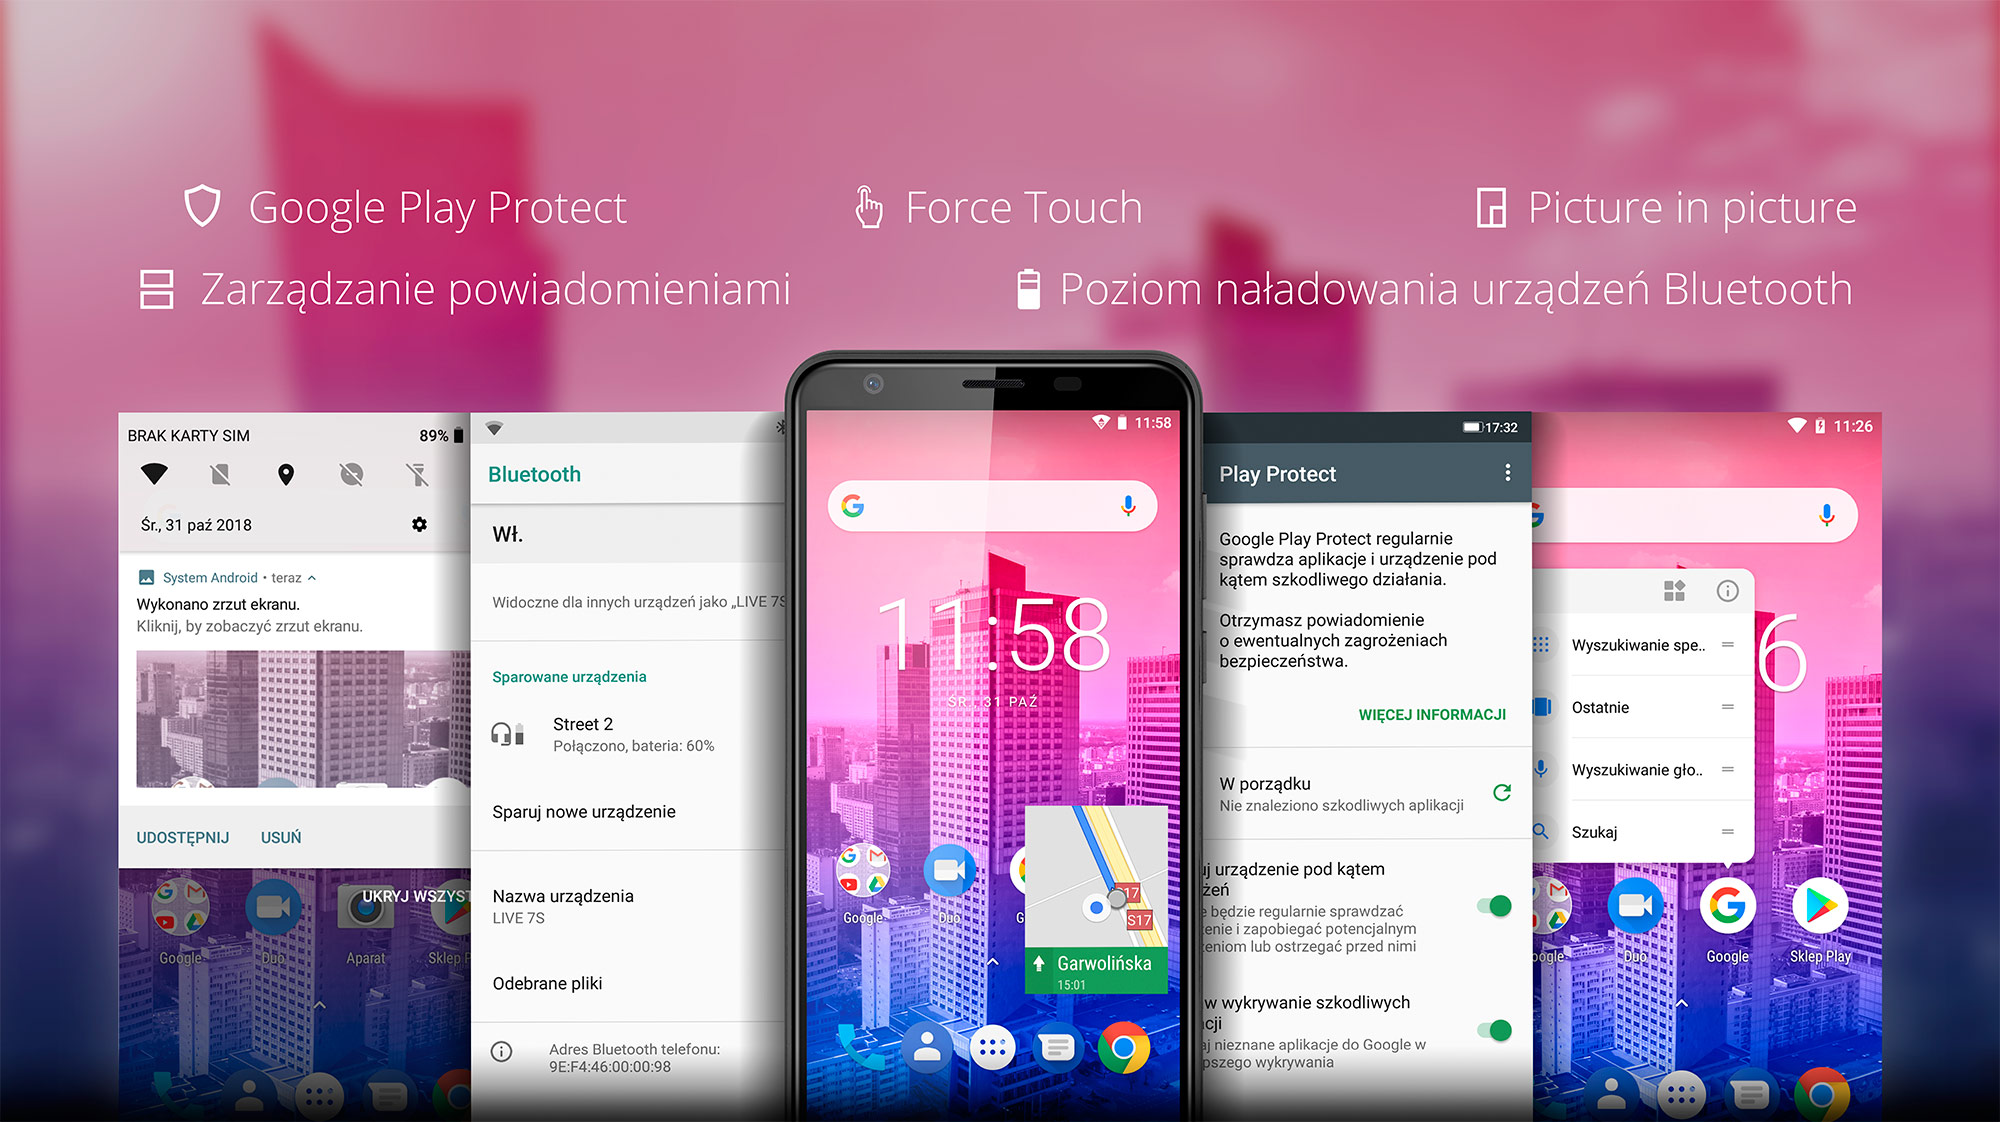 Google Play Protect | Force Touch | Picture in picture | Zarządzanie powiadomieniami | Poziom naładowania urządzeń Bluetooth 